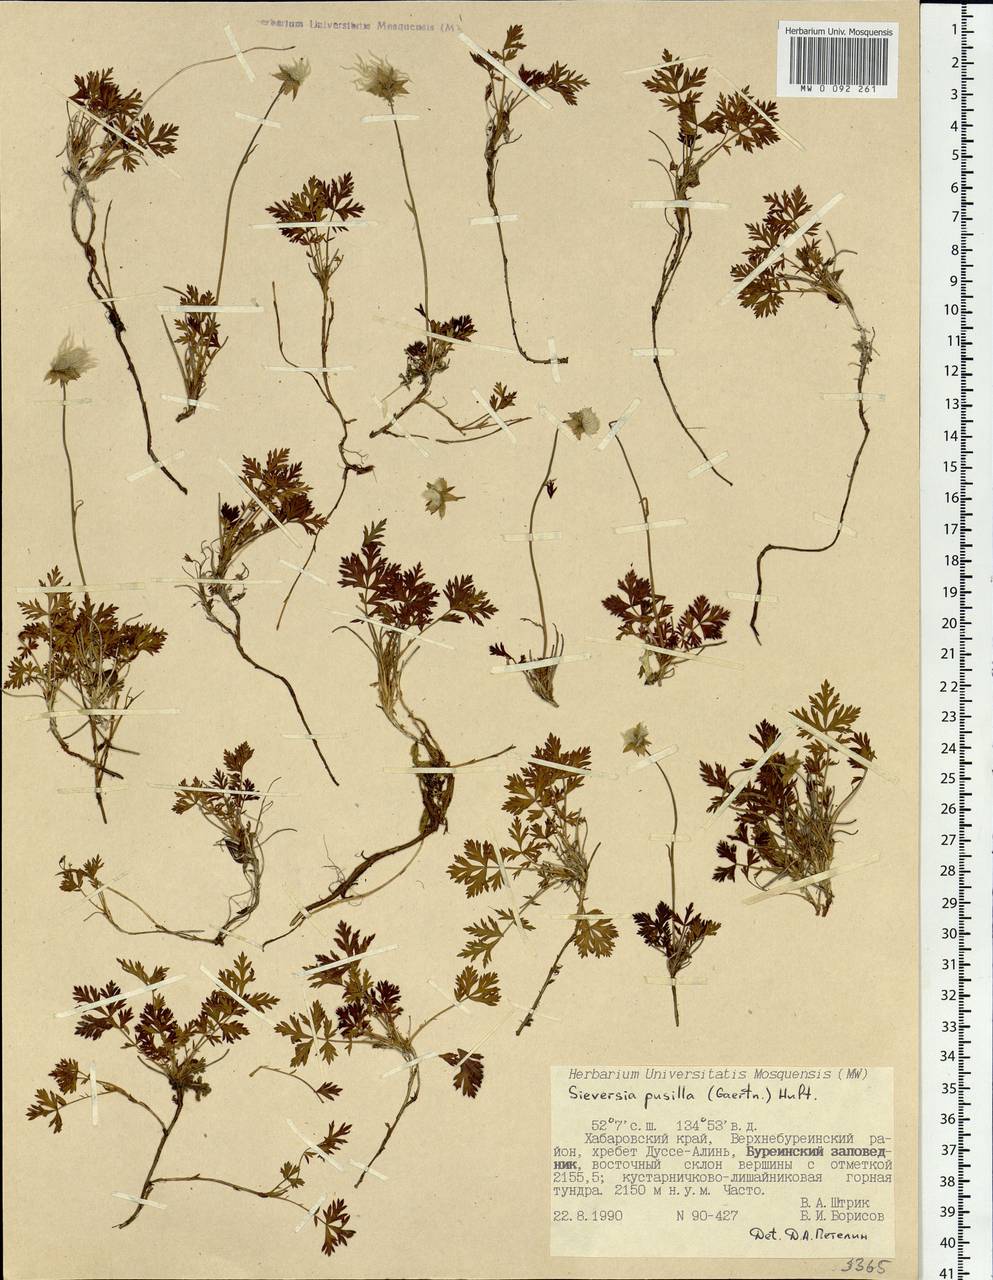 Geum selinifolium (Fisch. ex F. Schmidt) Hultén, Siberia, Russian Far East (S6) (Russia)